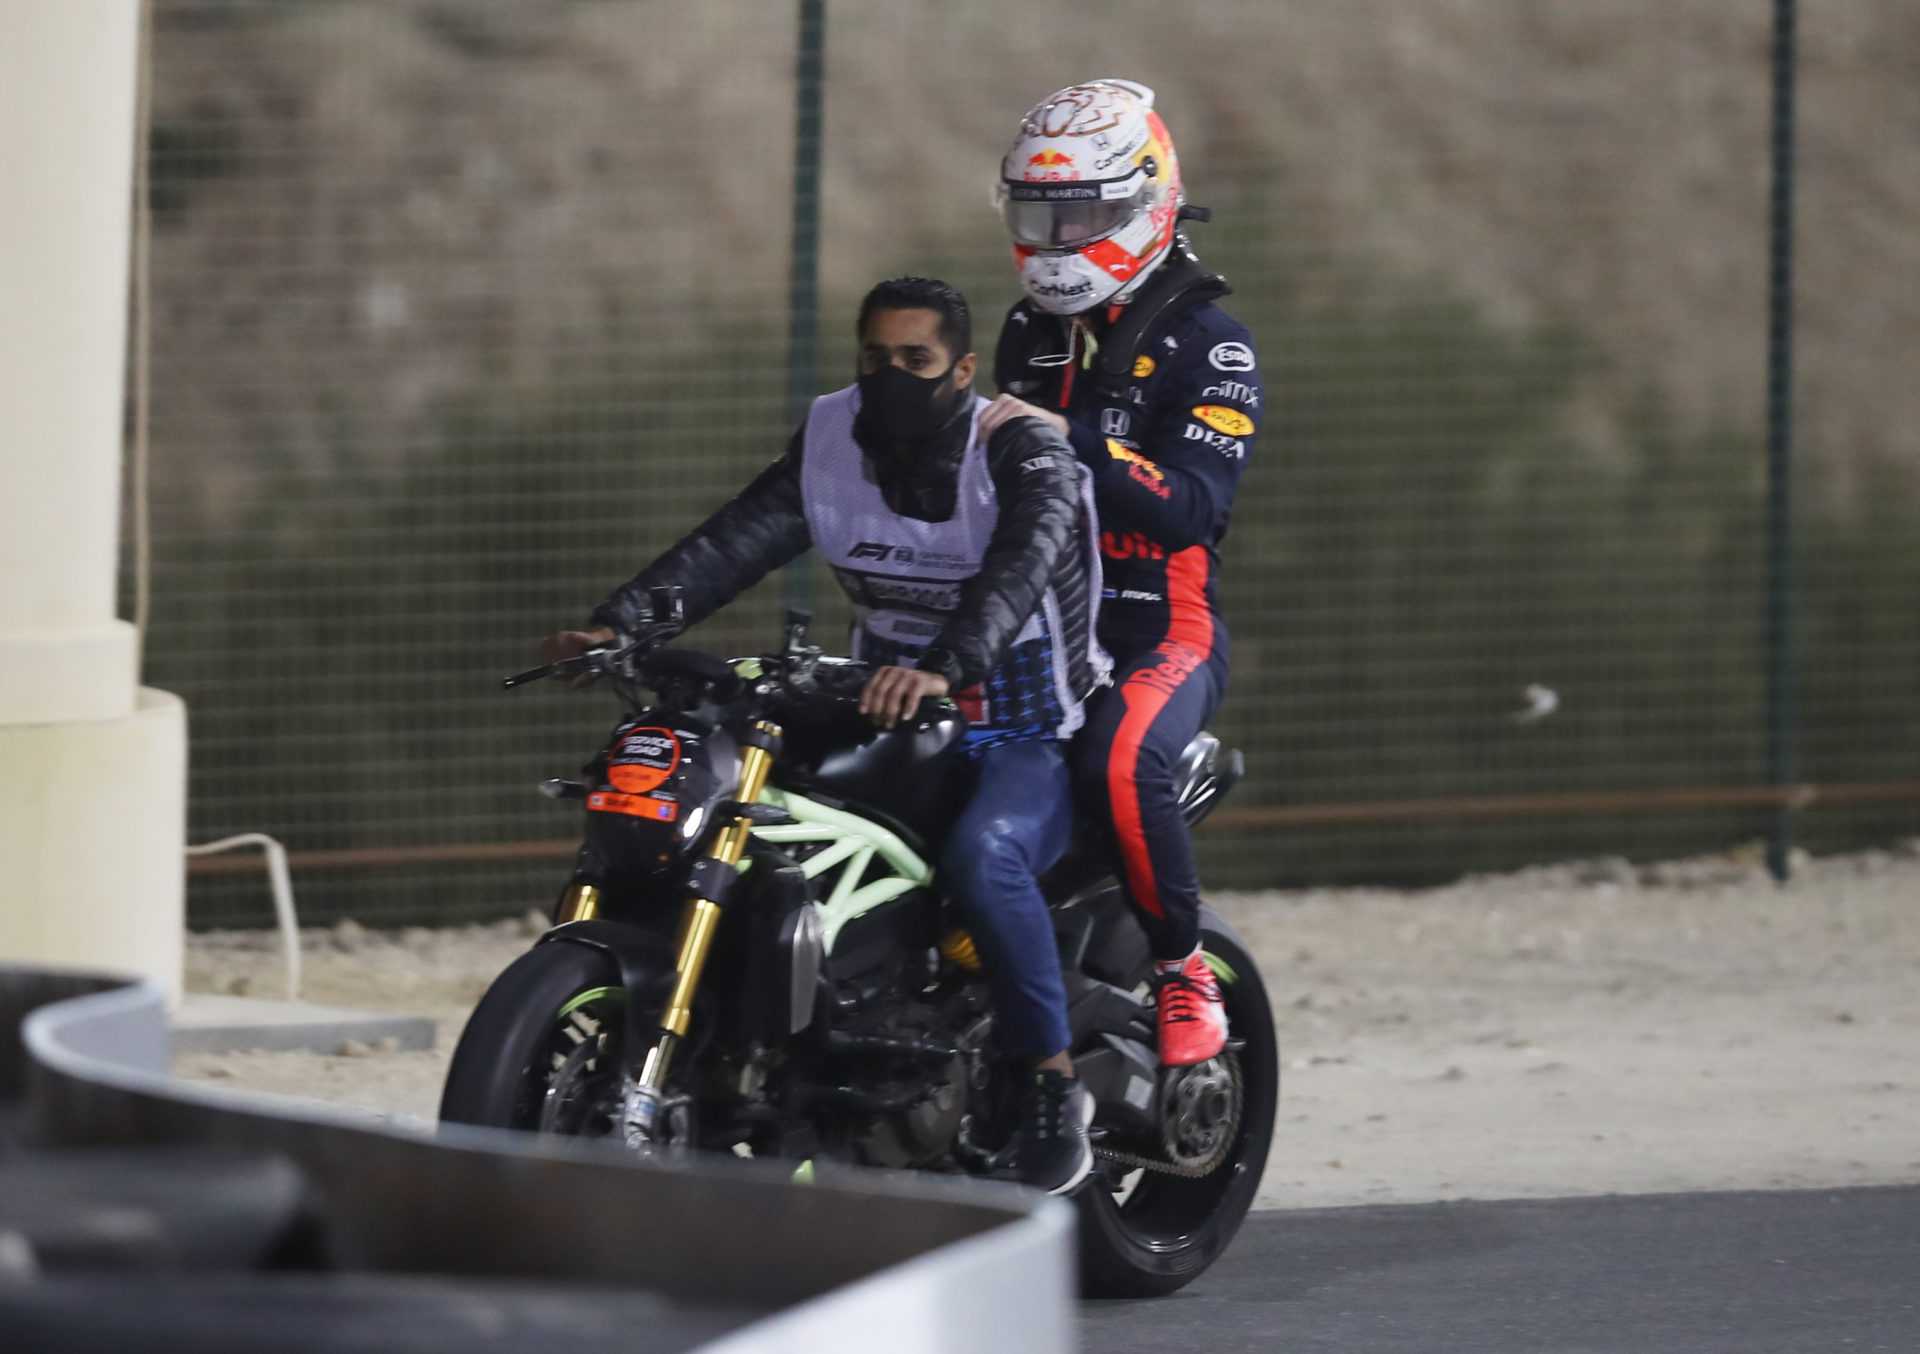 REGARDER: Max Verstappen et Leclerc sortent du GP de Sakhir après un départ chaotique